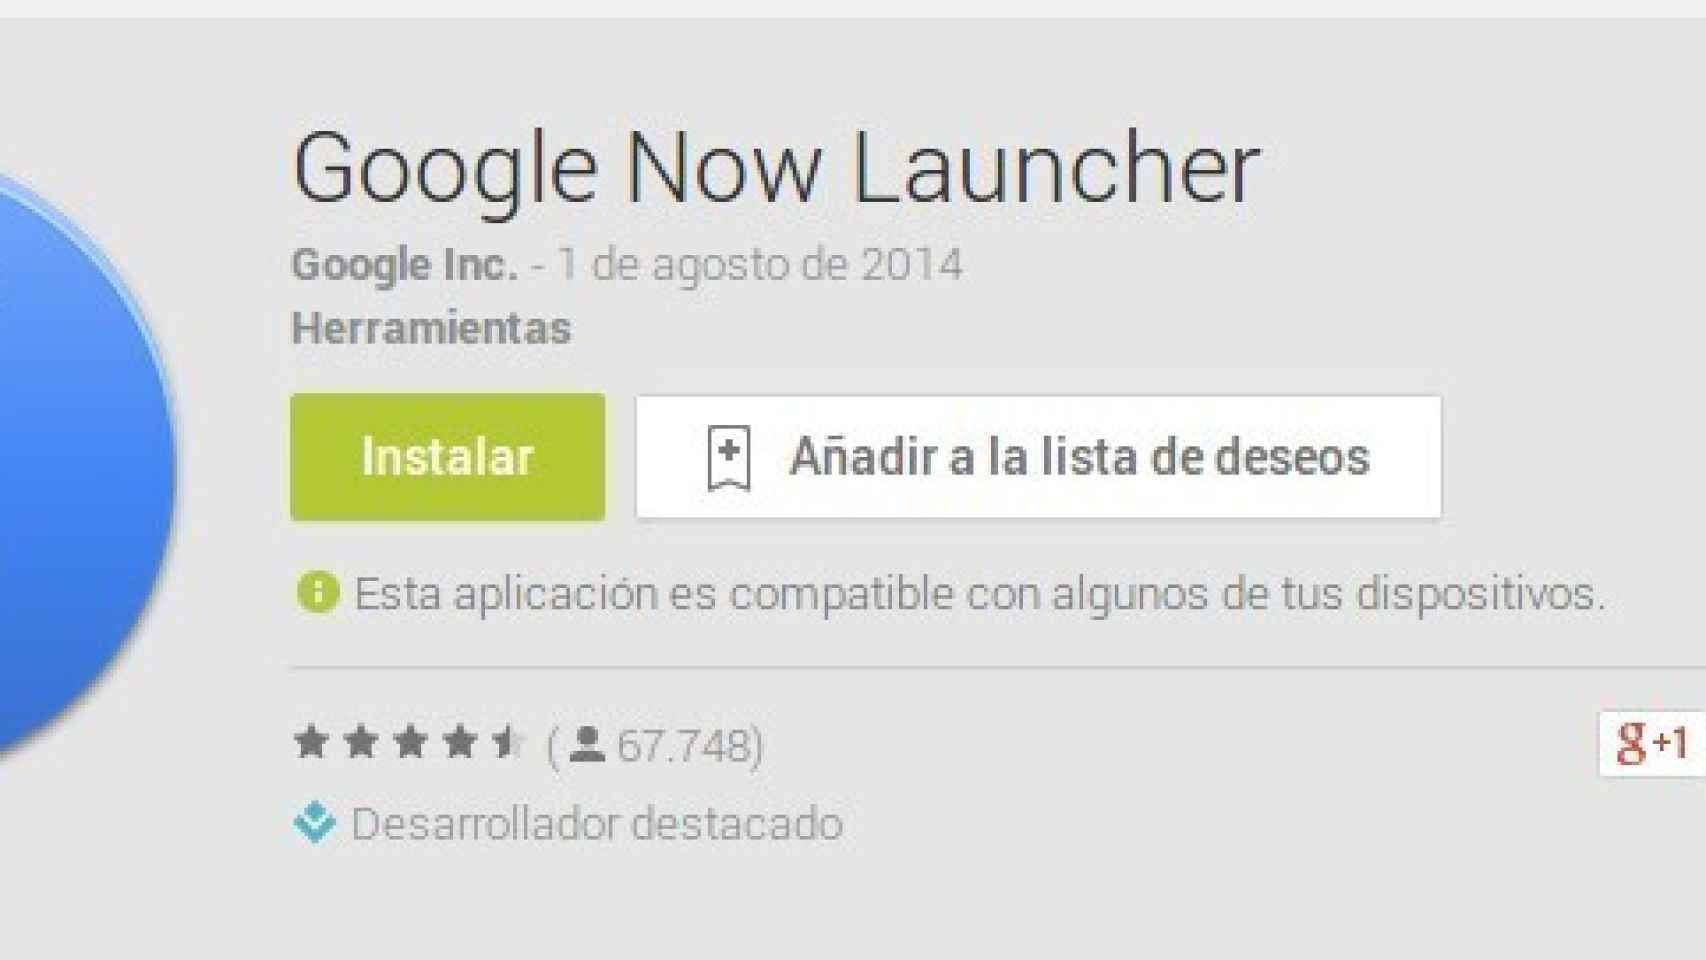 Google Now Launcher ya disponible para todos los dispositivos con Android 4.1 o superior